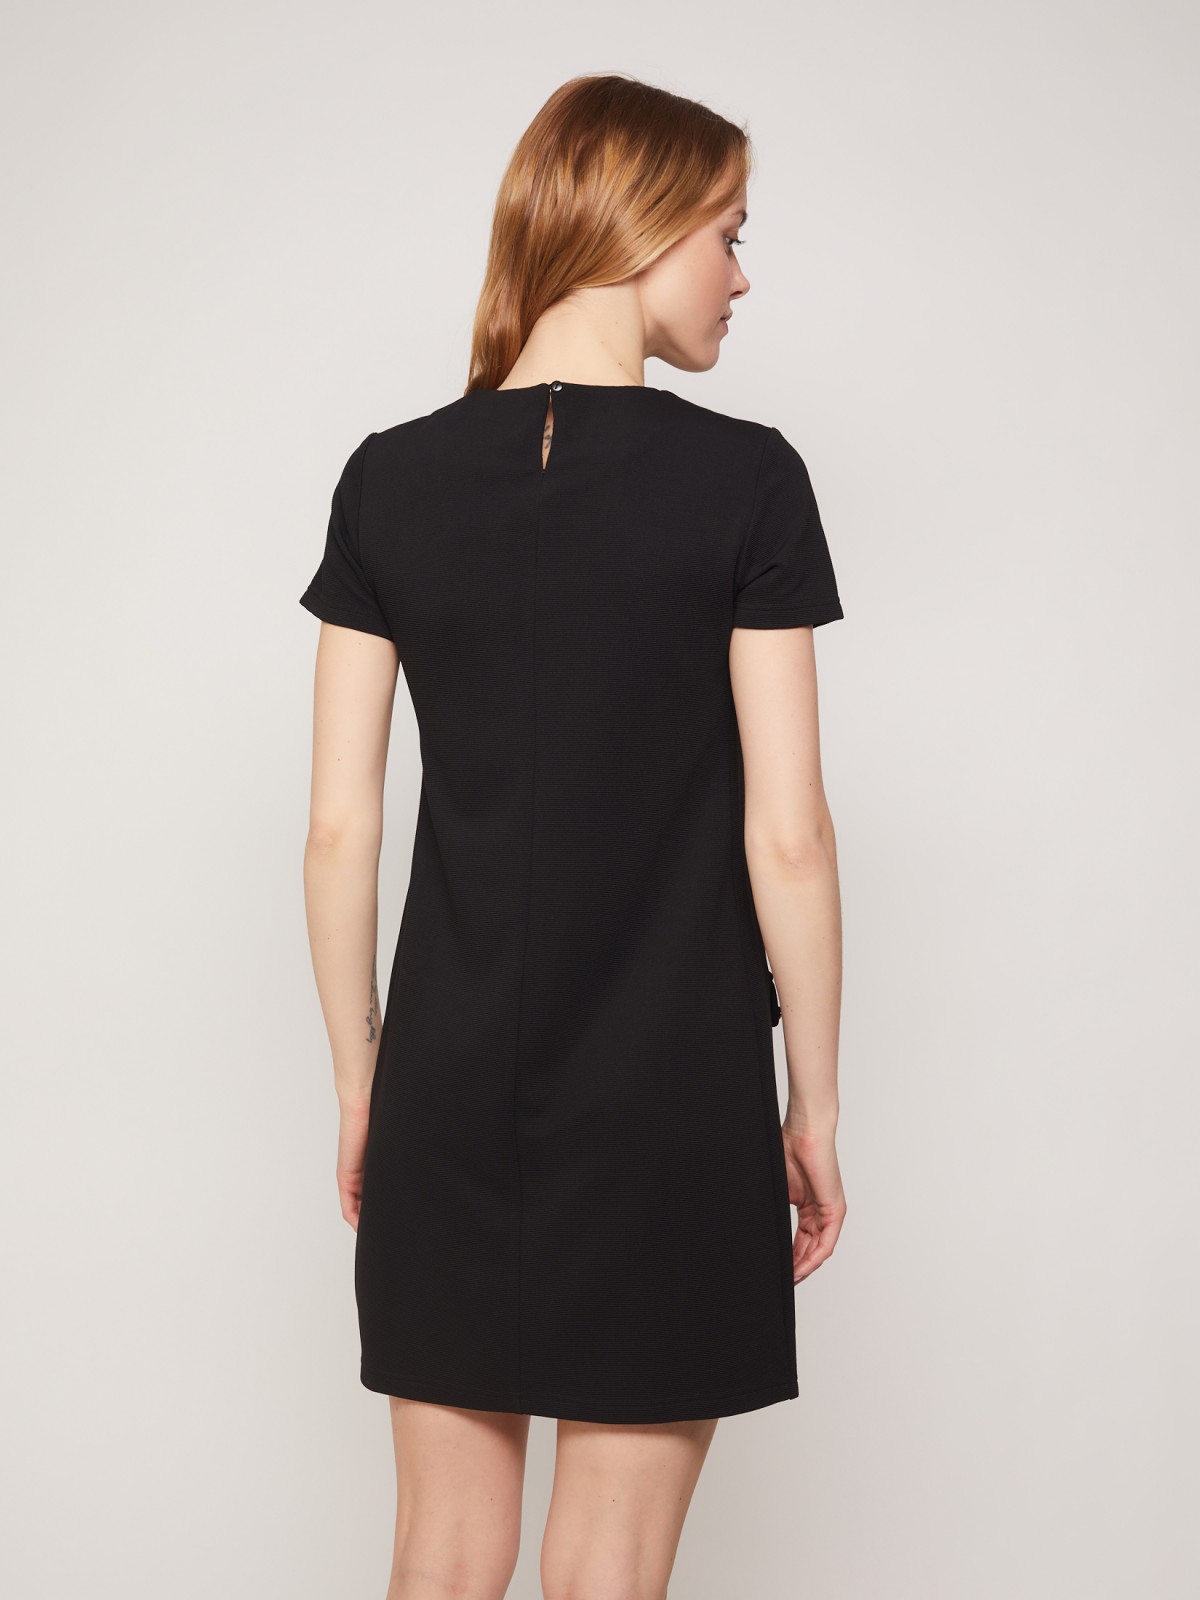 Платье-футболка zolla 02133814Y012, цвет черный, размер XS - фото 6